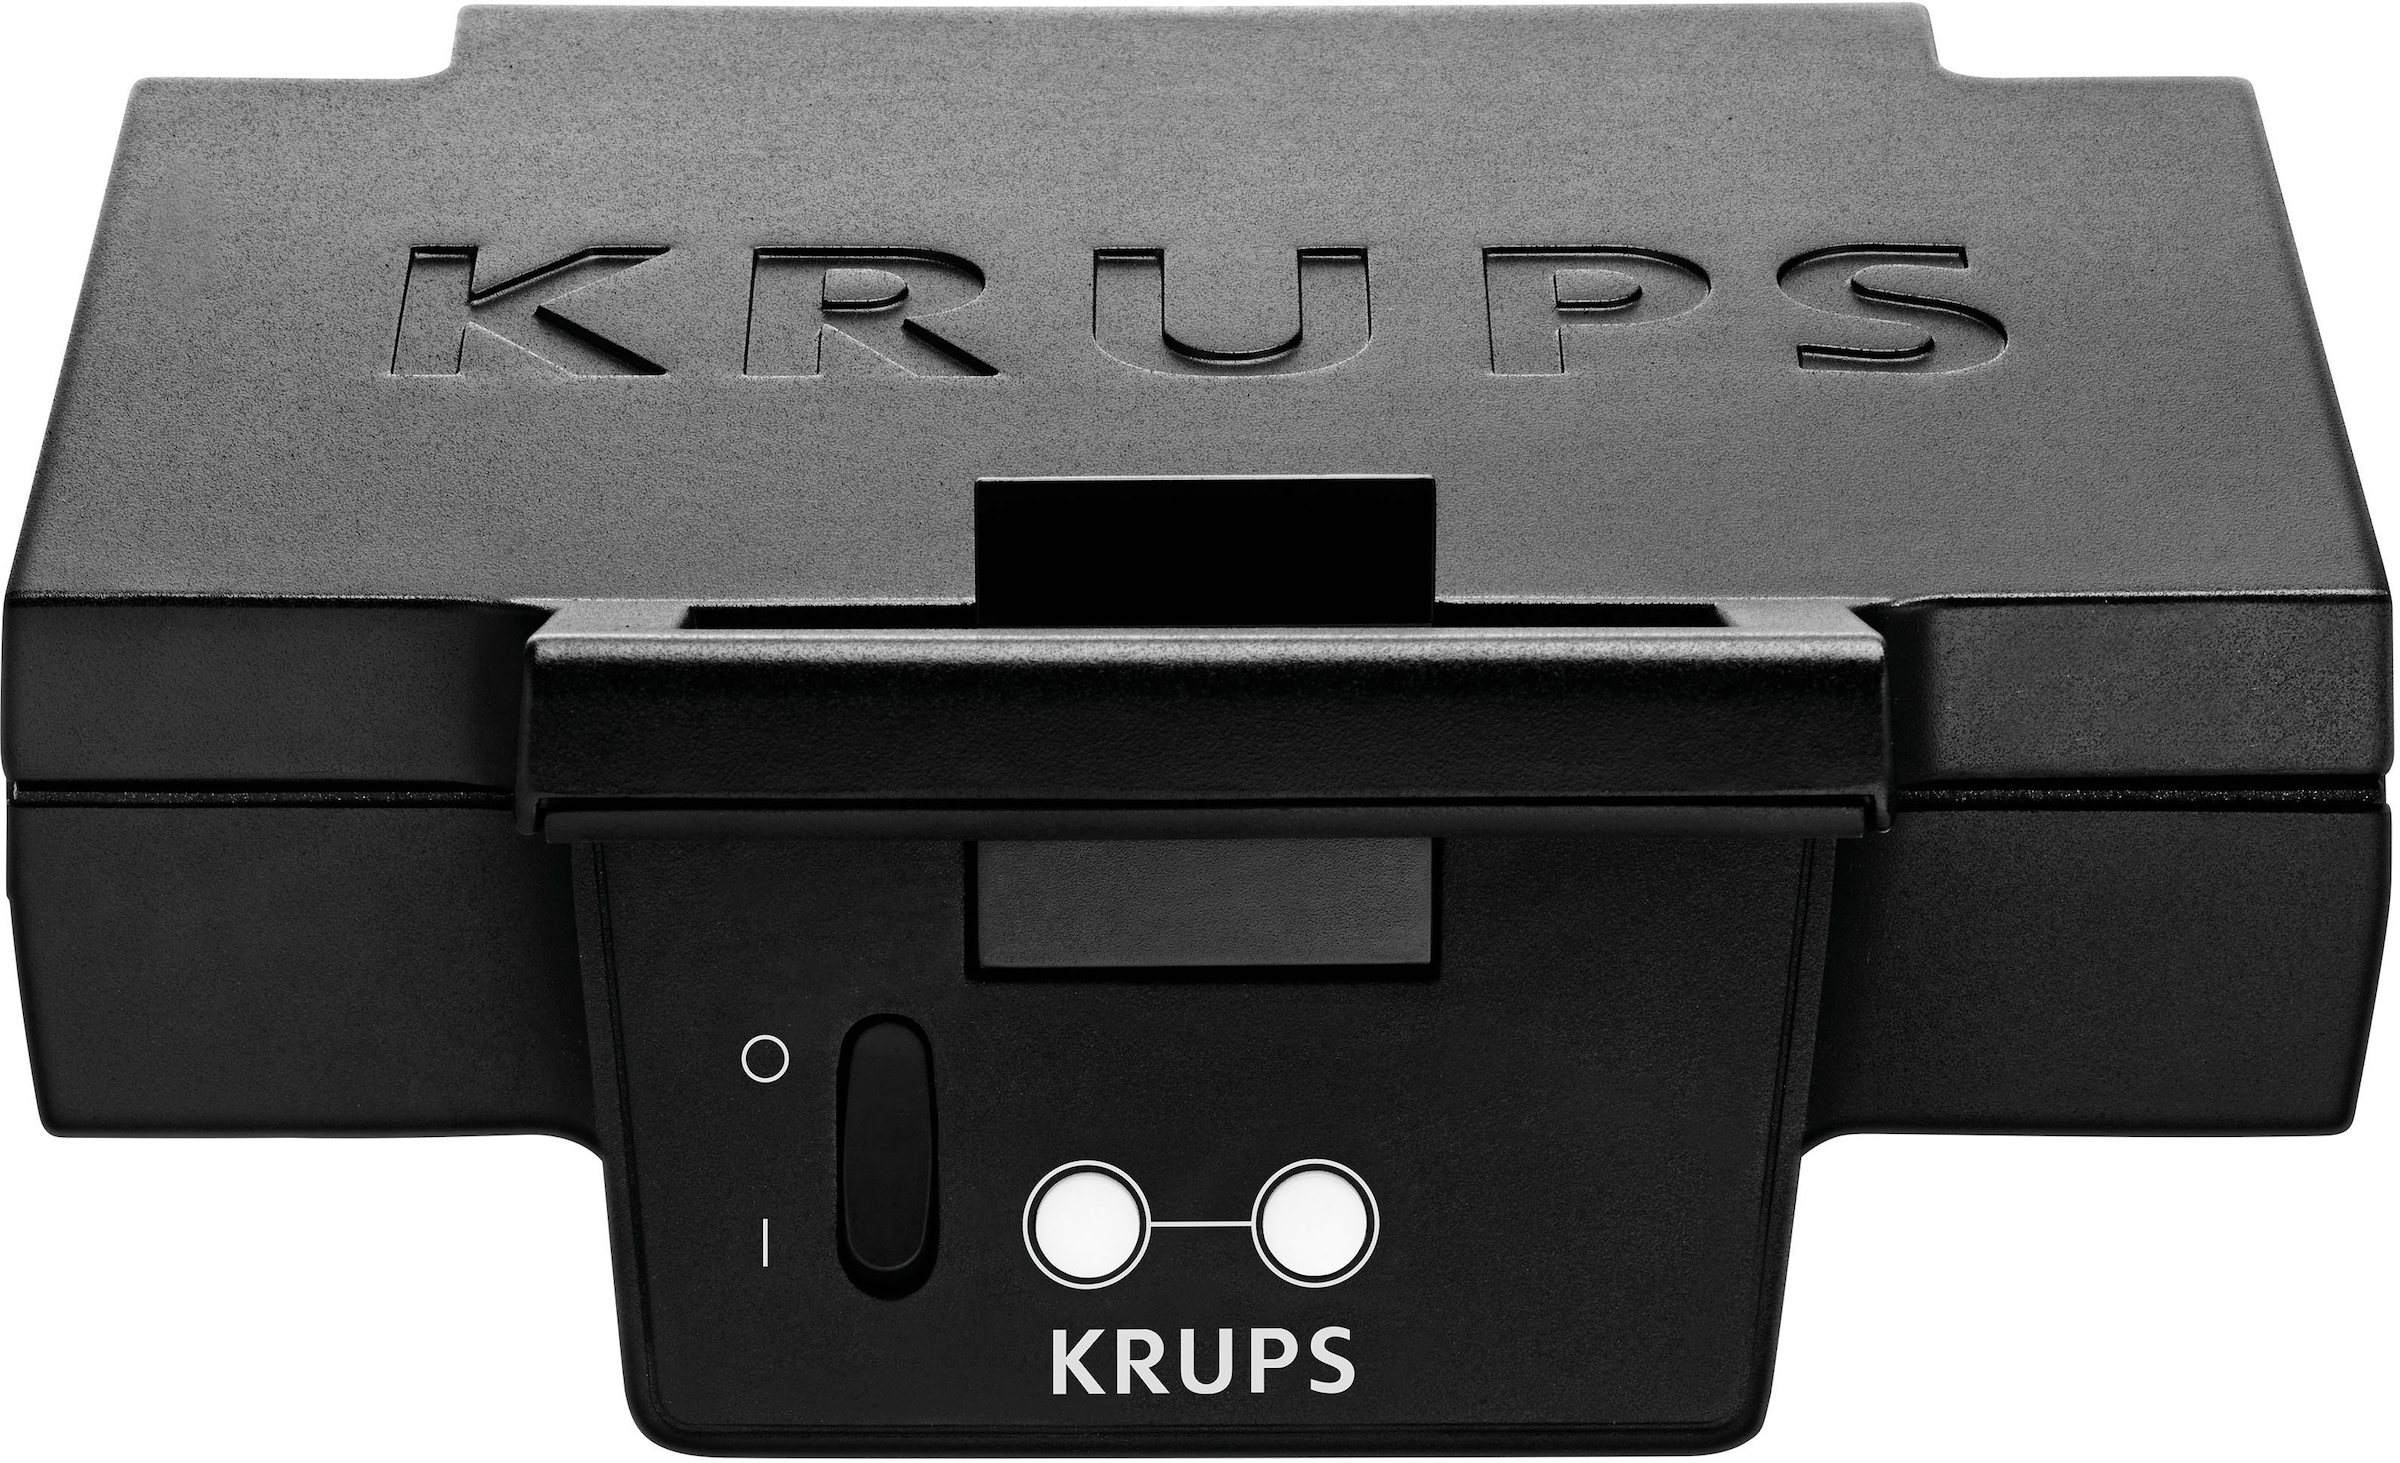 Krups Sandwichmaker »FDK452«, 850 W, breite Platten, Temperaturkontrollleuchte, praktischer Griff, kompakt